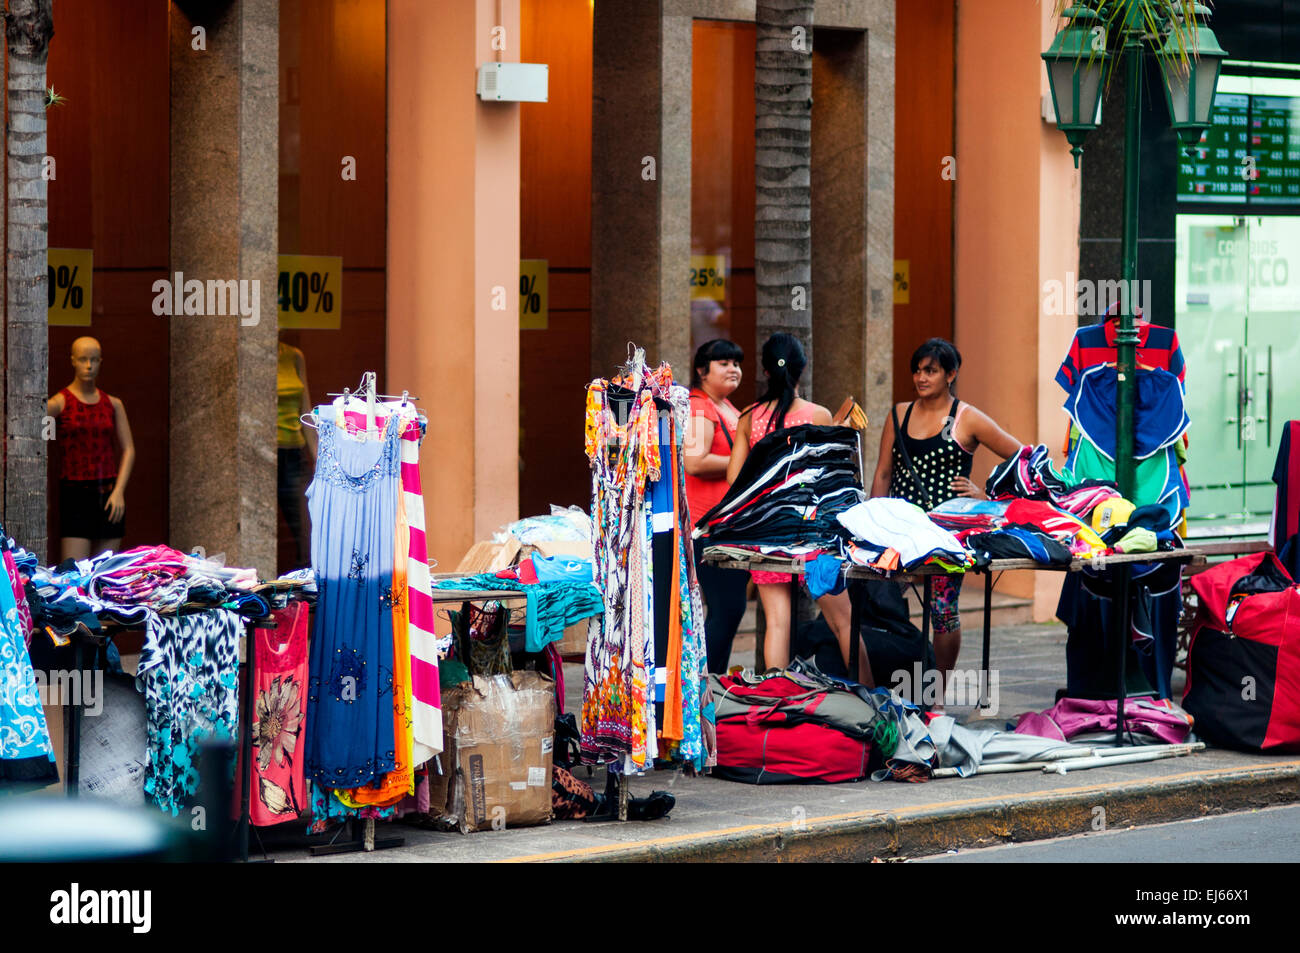 Street stalls, Calle Palma, Central Asuncion Stock Photo